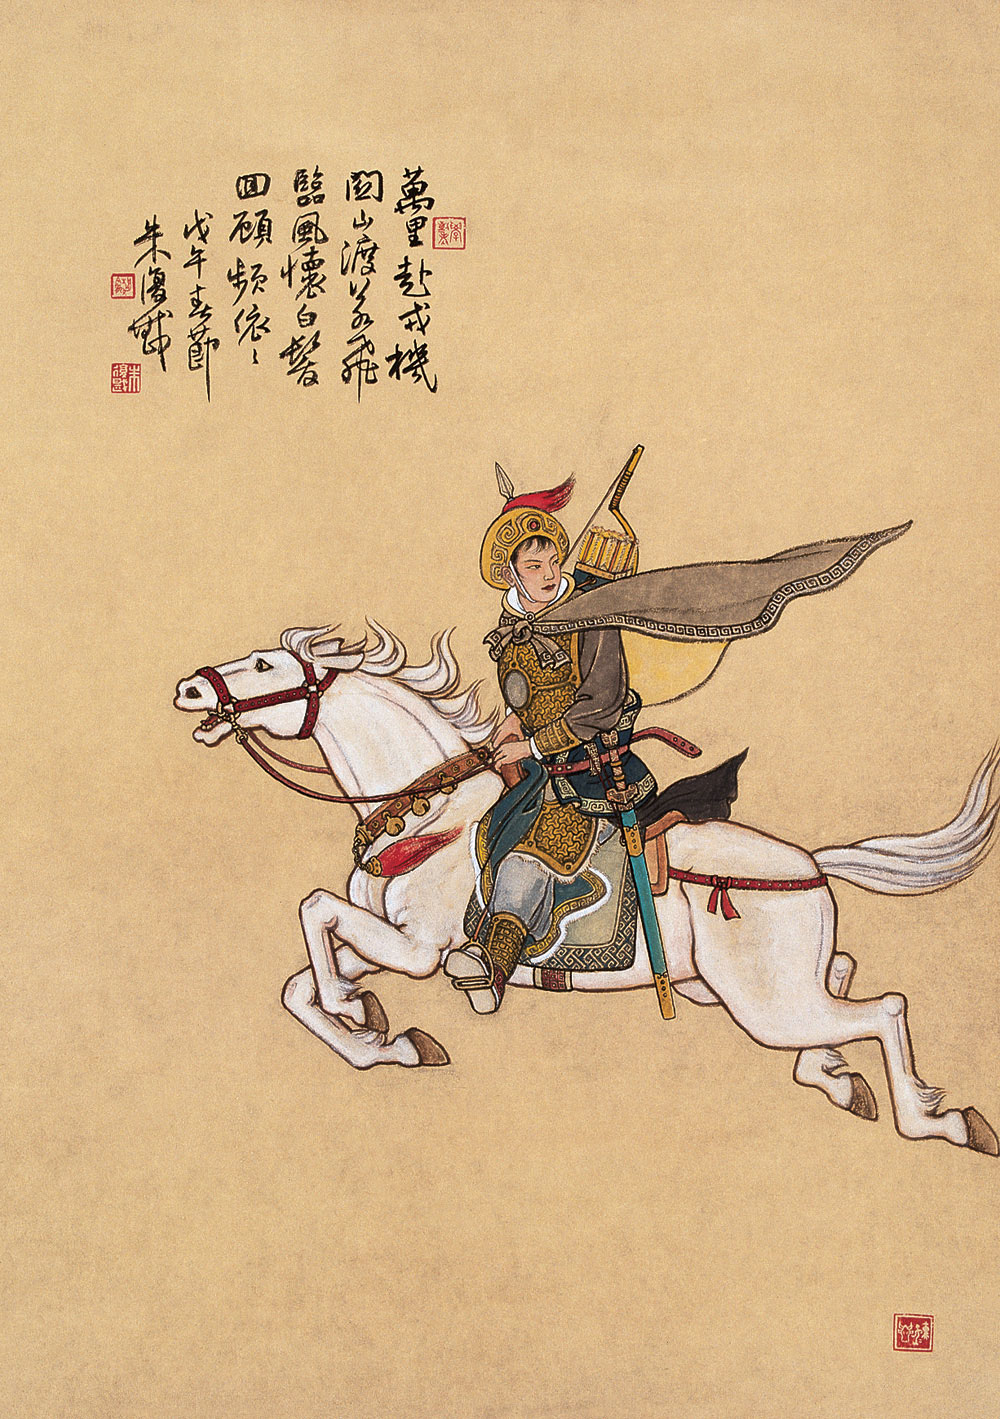 La Ballata di Hua Mulan: tra storia e leggenda, una delle più valorose eroine cinesi